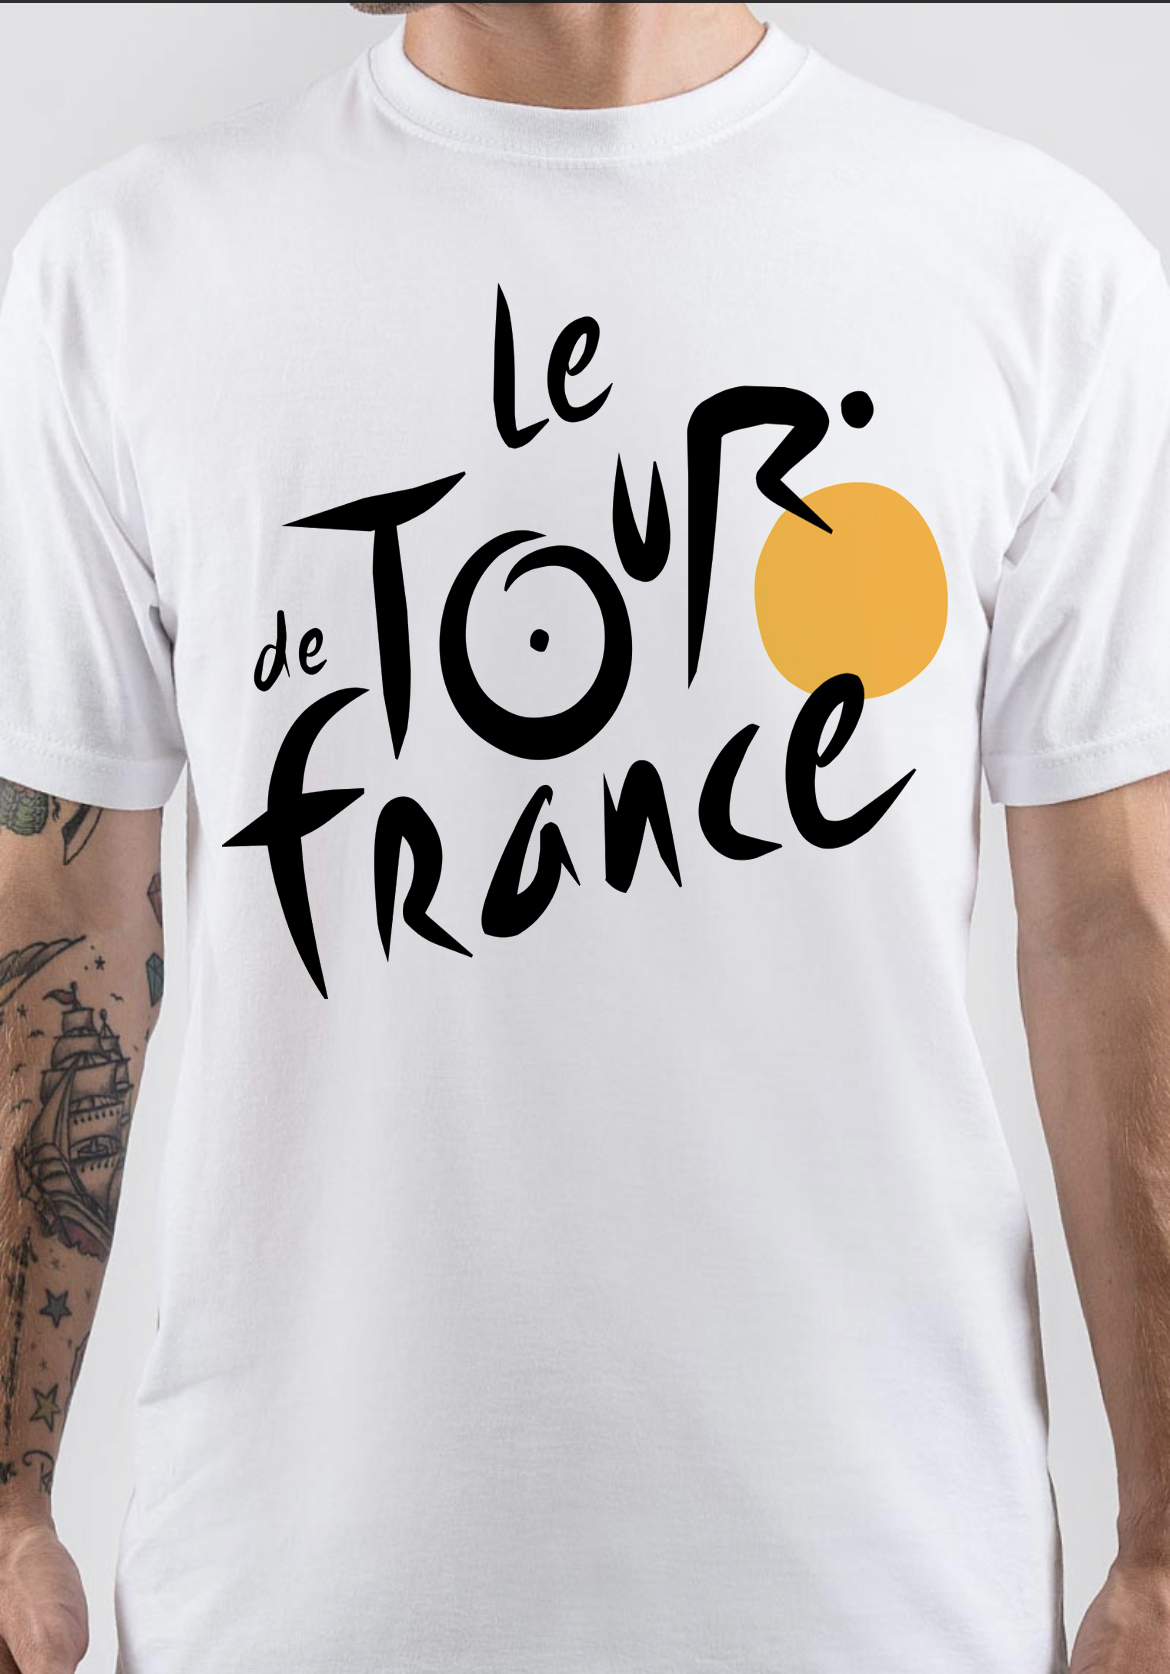 Tour De France T-Shirt And Merchandise